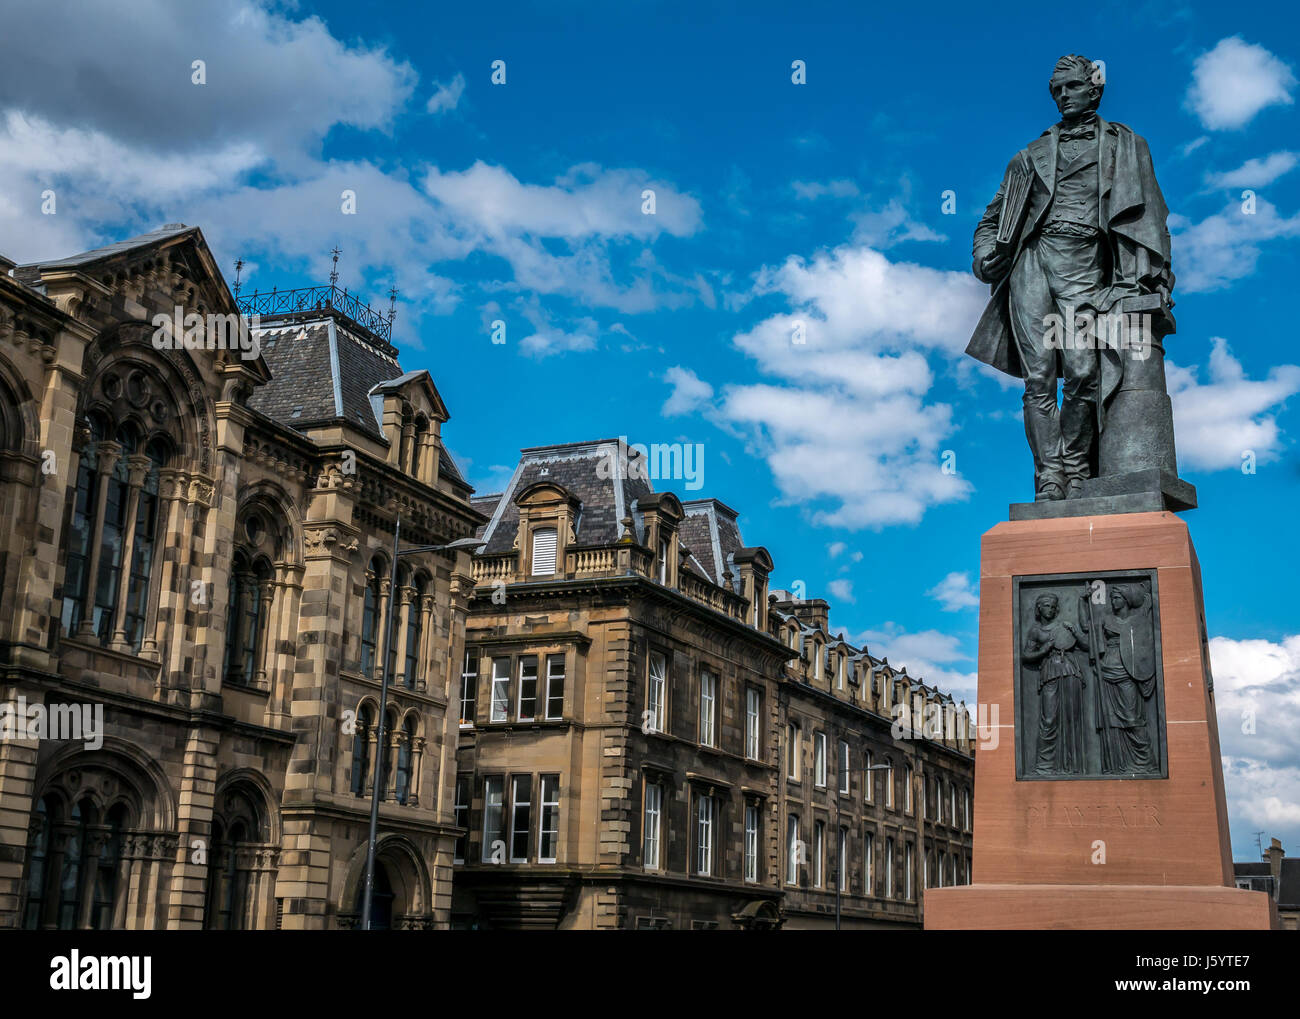 Statua in bronzo sul plinto di William Henry Playfair, famoso architetto del XIX secolo, le camere Street, Edinburgh, Regno Unito, Museo Nazionale di Scozia Foto Stock